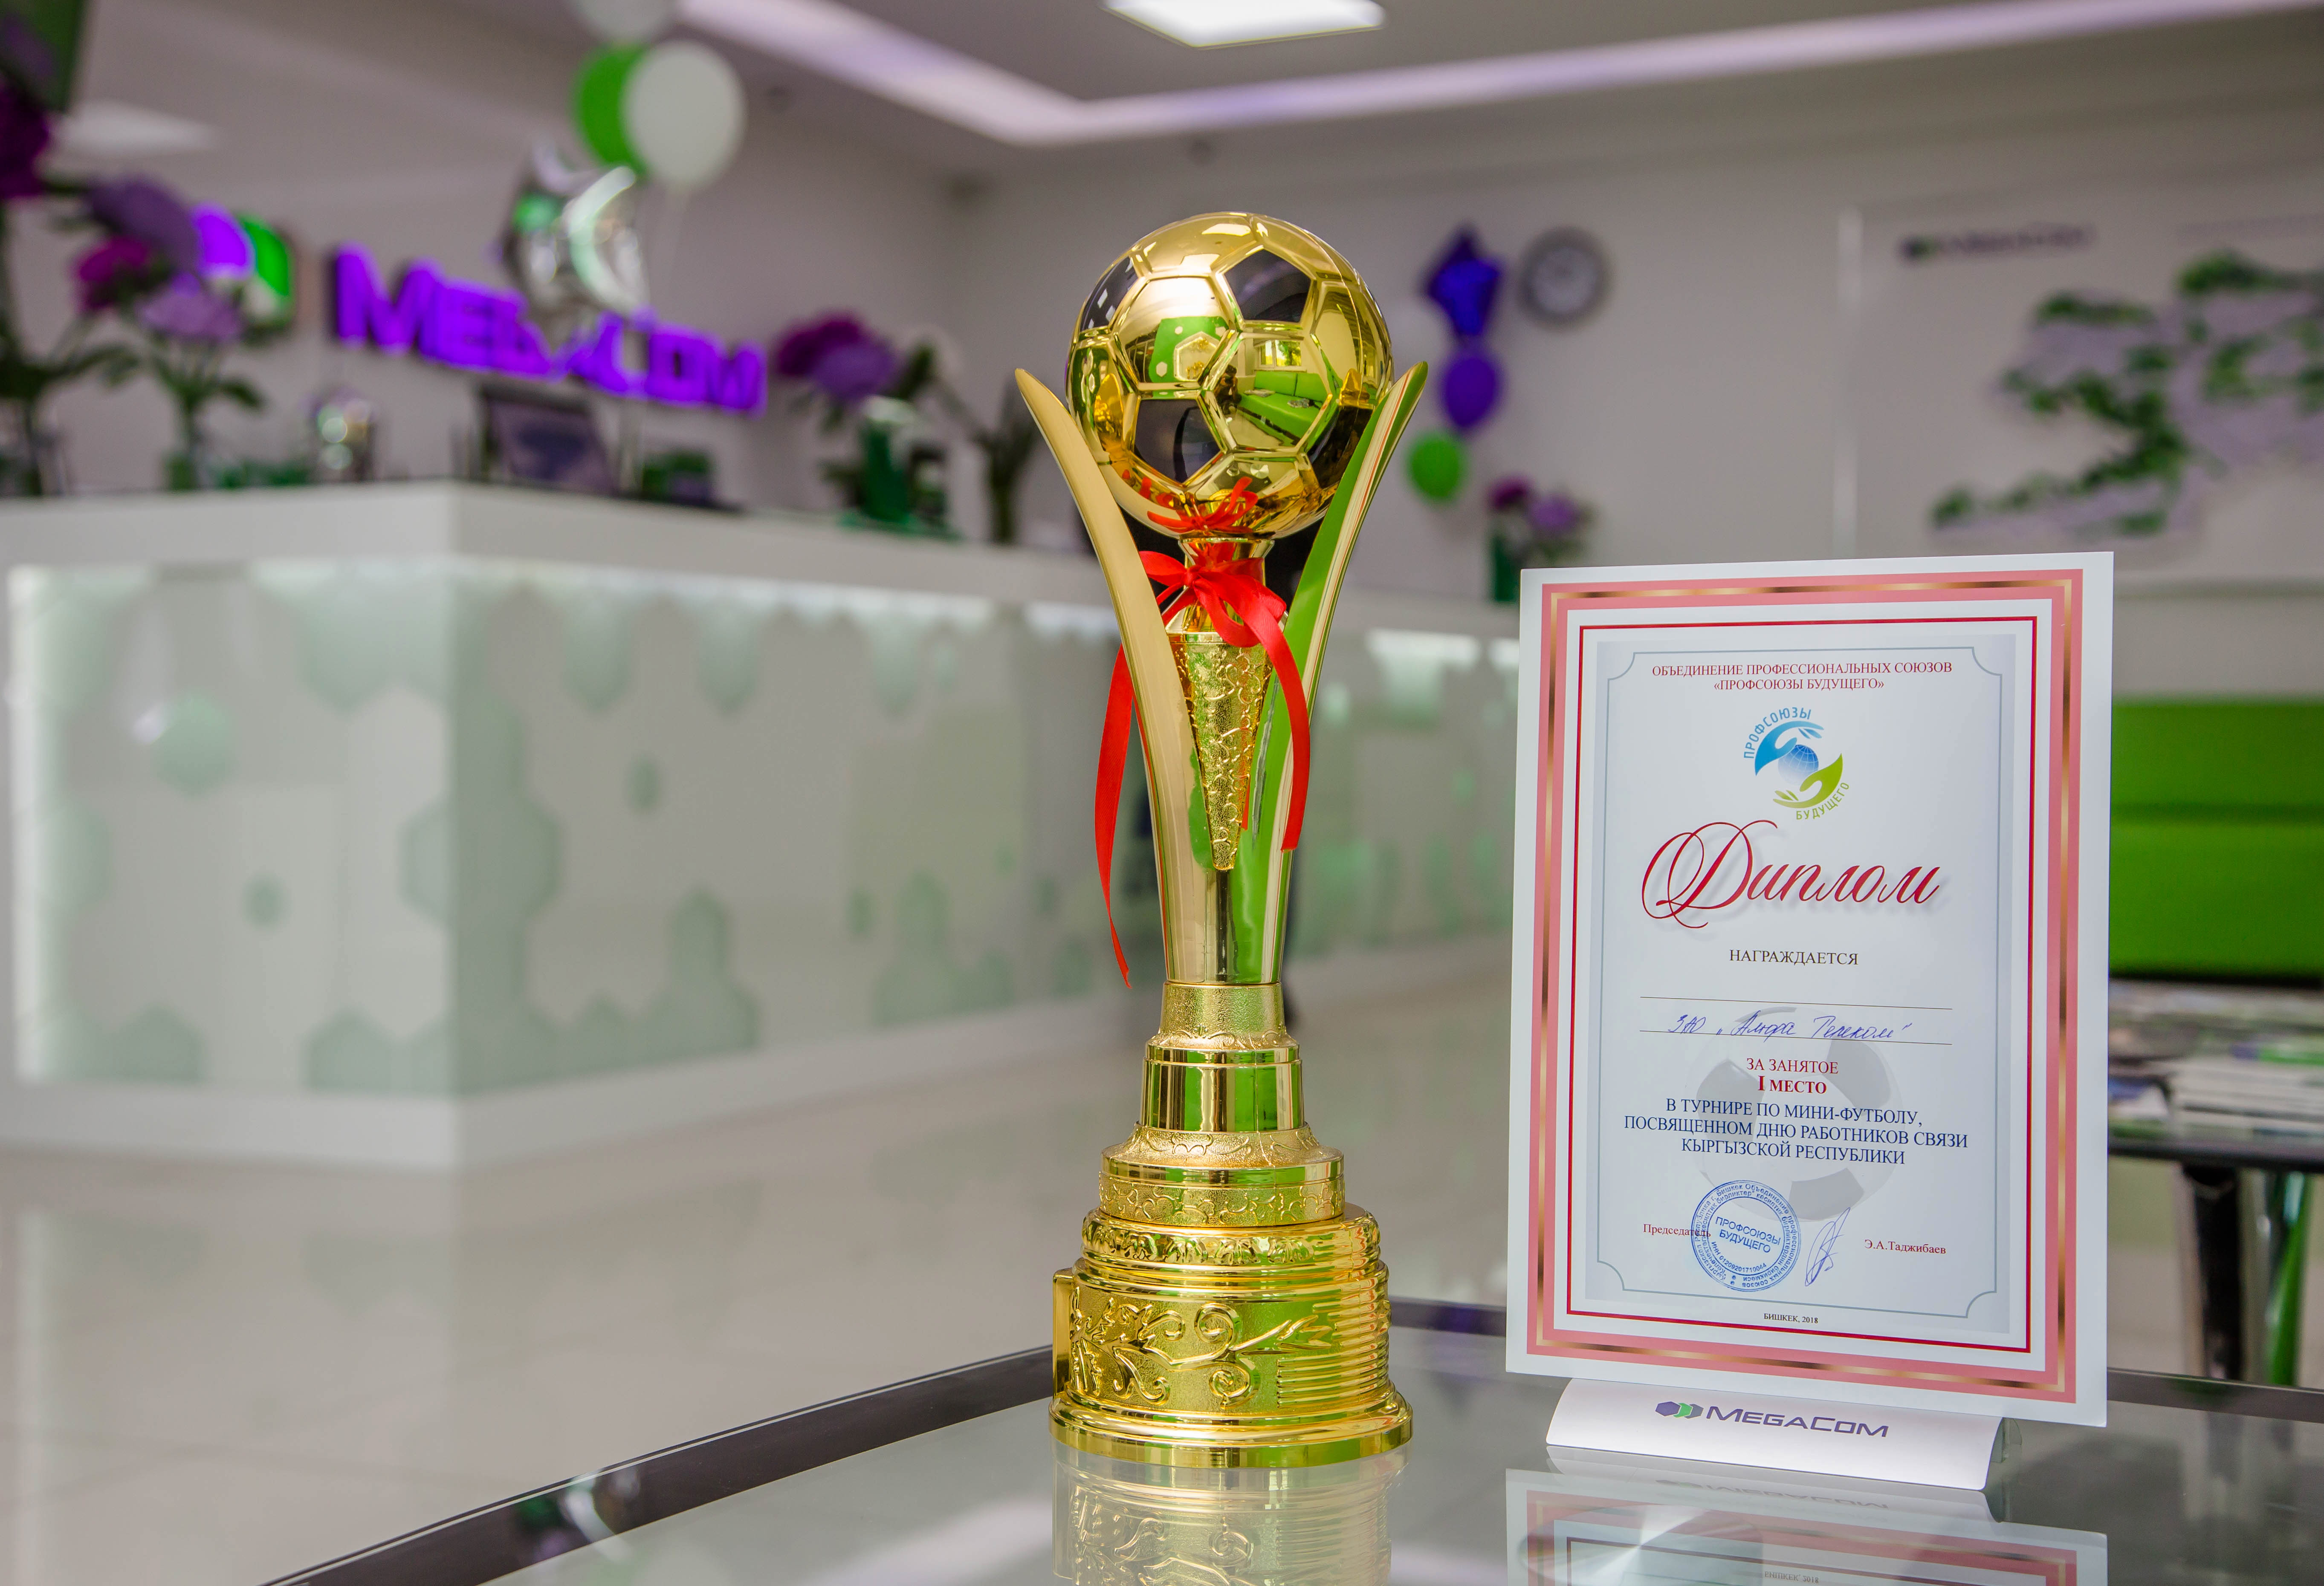 Копилка футбольной команды MegaCom пополнилась еще на один Кубок - сборная компании заняла первое место в турнире по мини-футболу, посвященному Дню работников связи КР.  

